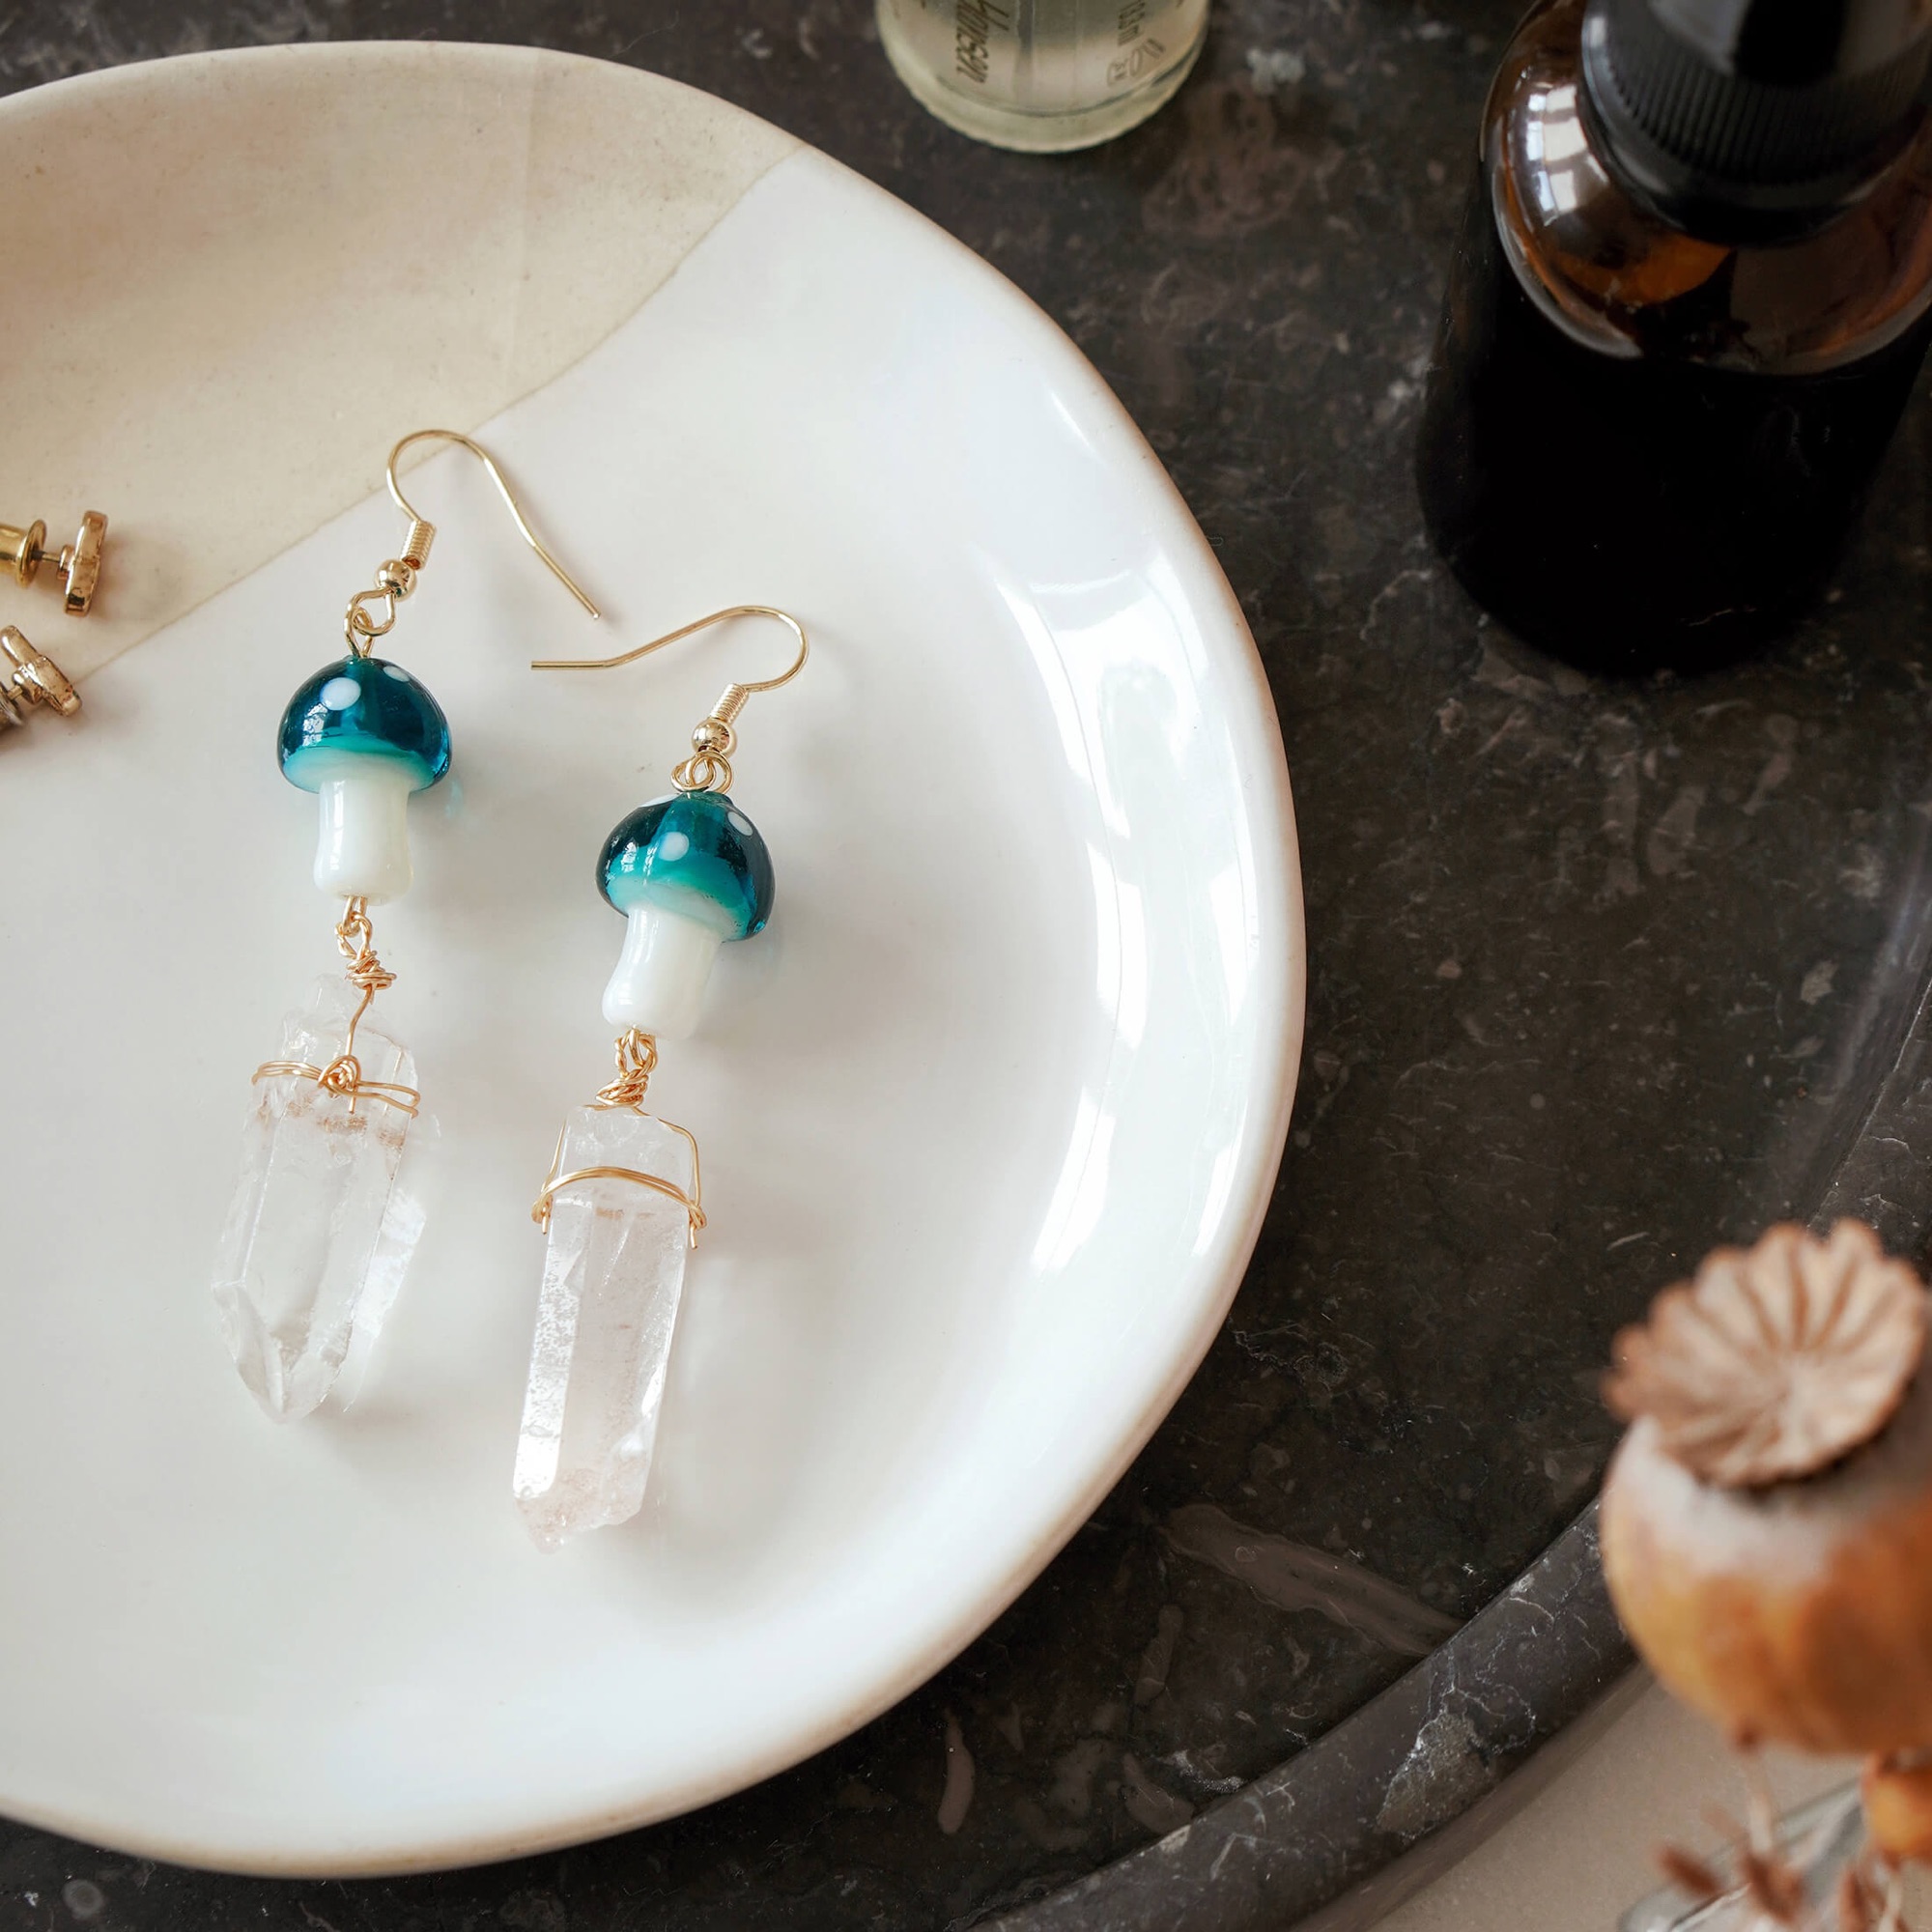 Mushroom Crystal Earrings by Xander Kostroma